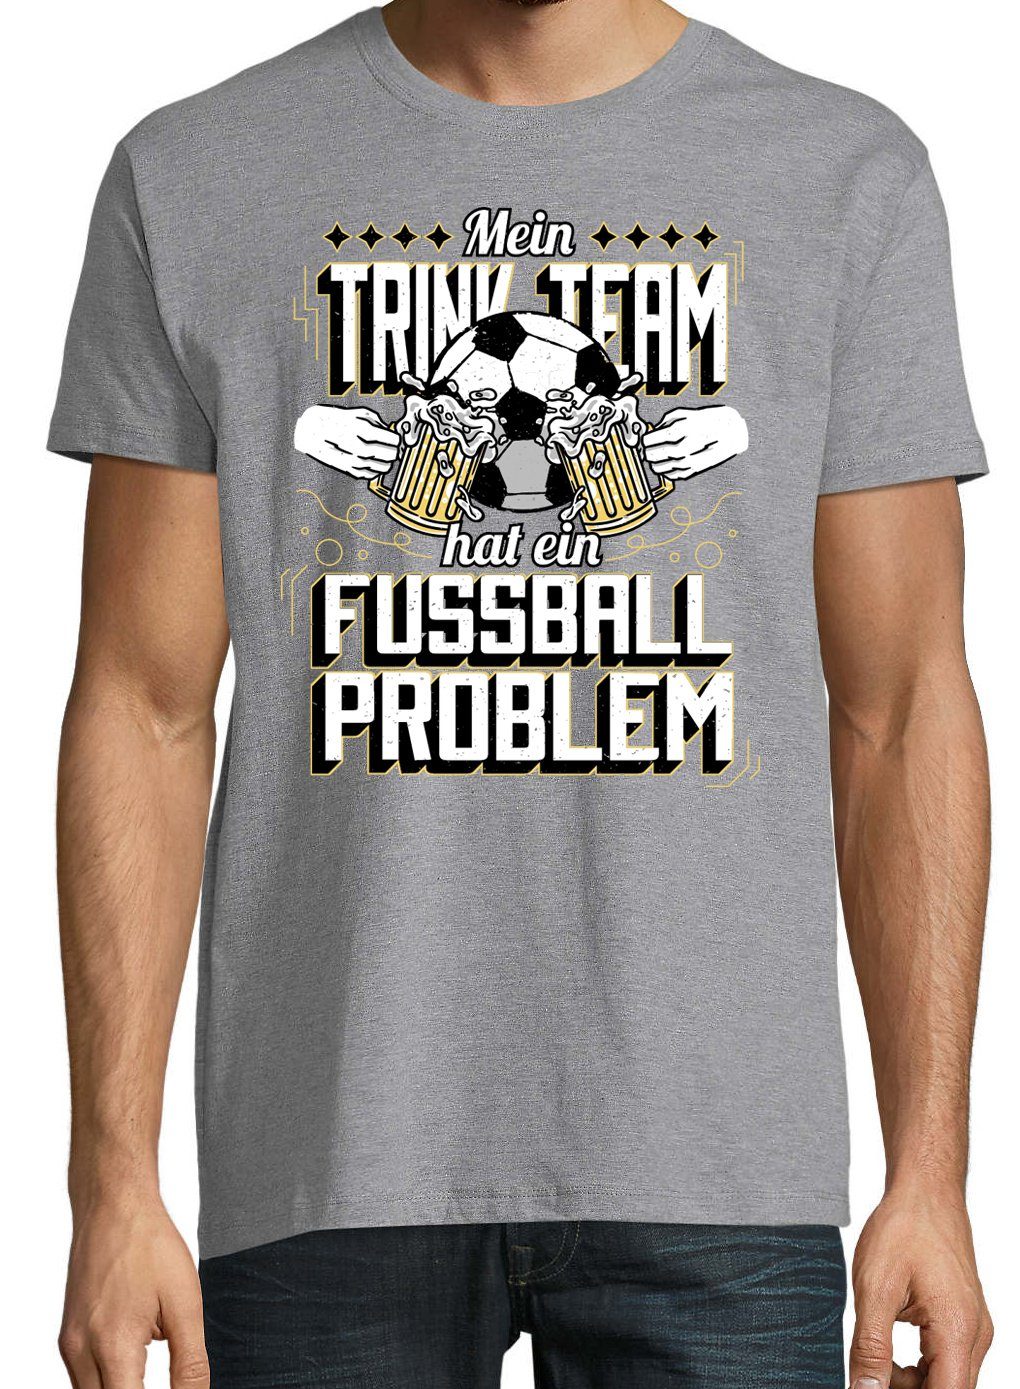 Shirt Grau Frontprint Ein Problem" Youth Fußball "Mein Hat Designz mit Herren trendigem T-Shirt Trinkteam